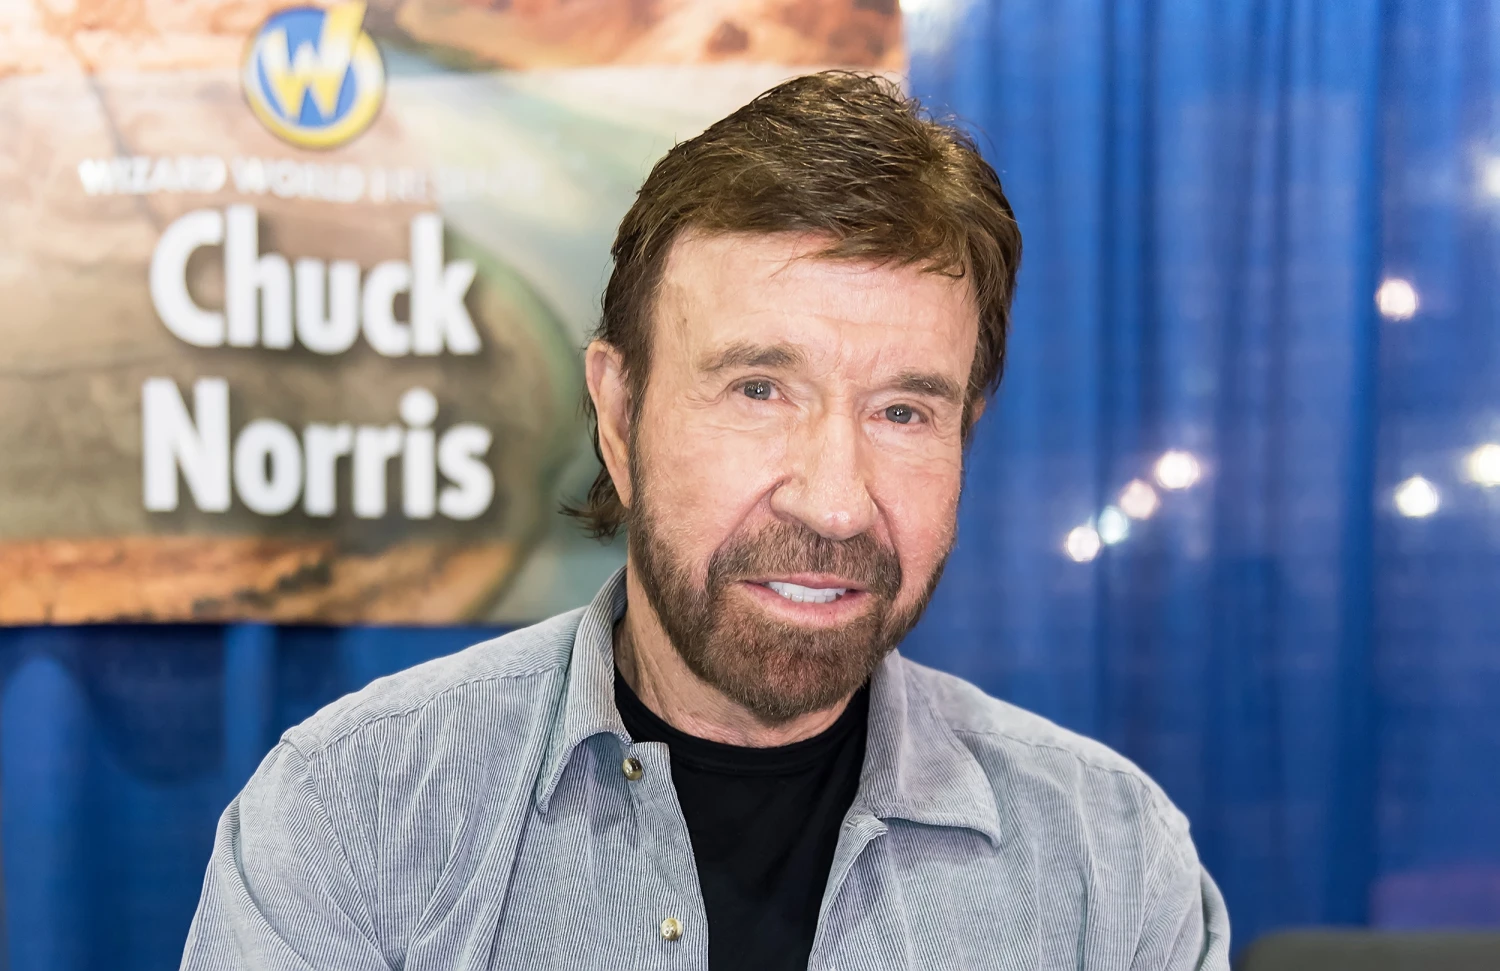 Pentagonul a anunțat că Chuck Norris a făcut parte din Forțele Aeriene